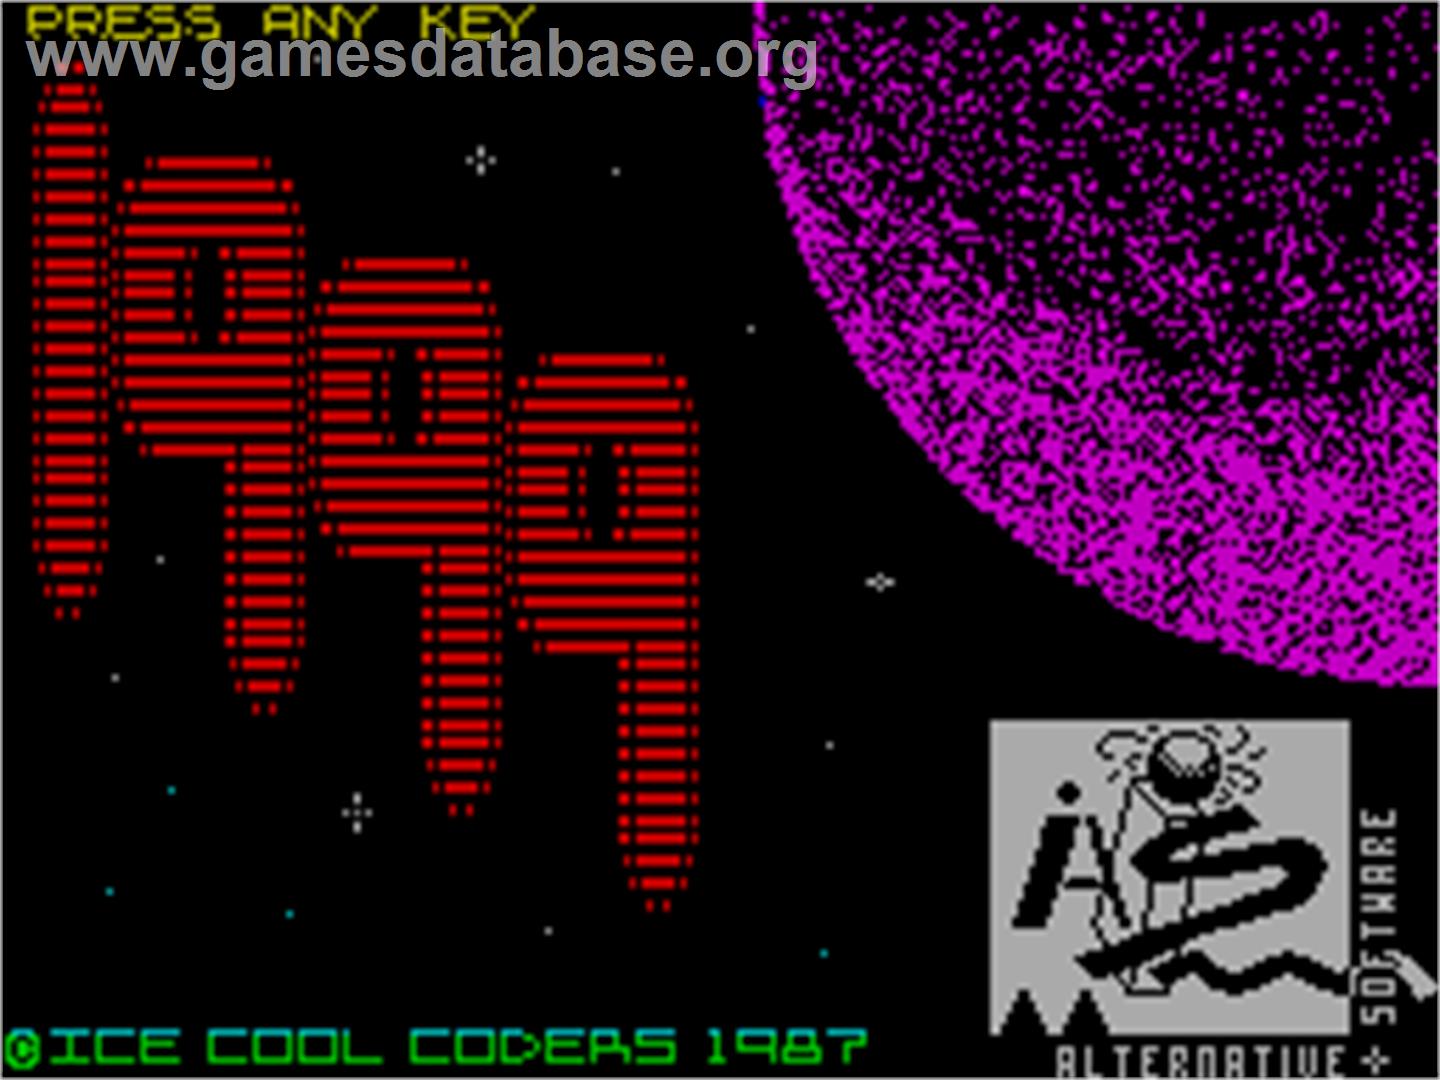 1999 - Sinclair ZX Spectrum - Artwork - Title Screen